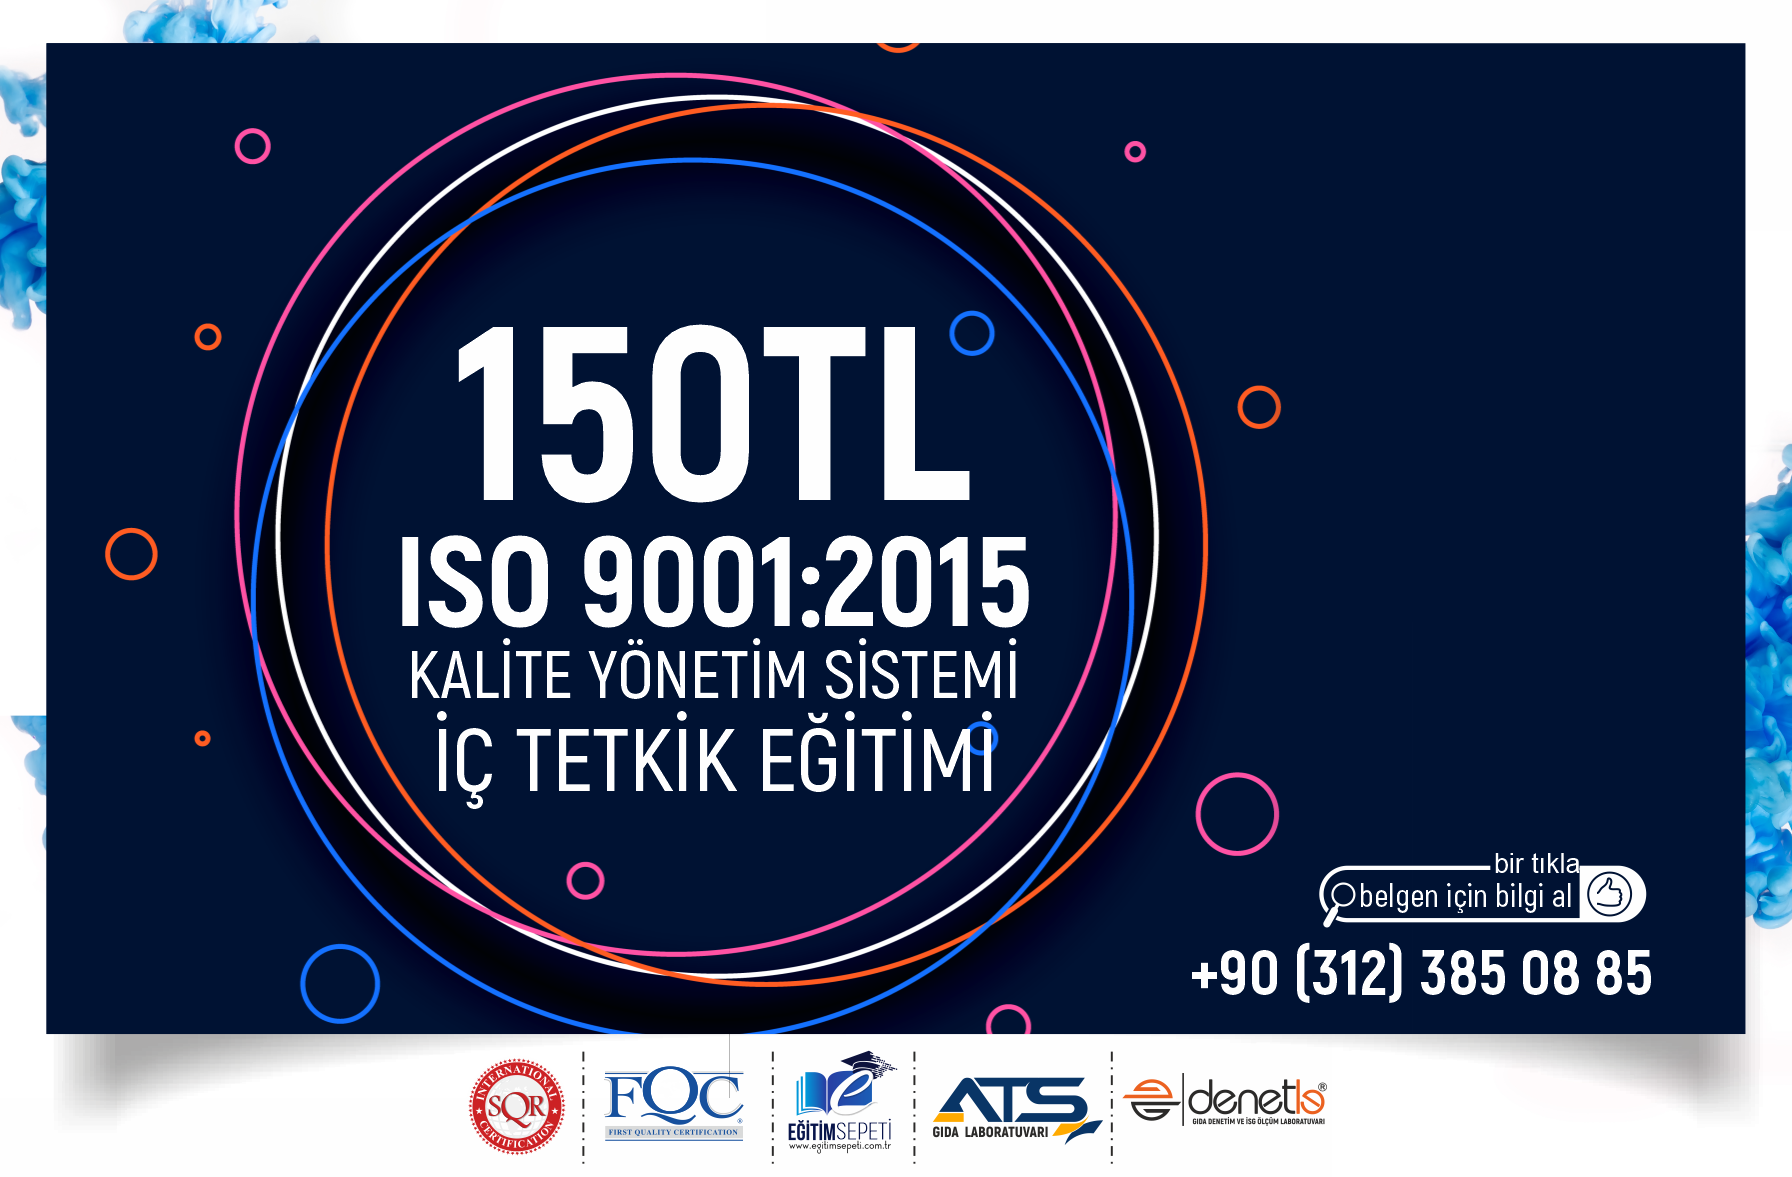 ISO 9001:2015 KALİTE YÖNETİM SİSTEMİ TEMEL EĞİTİM